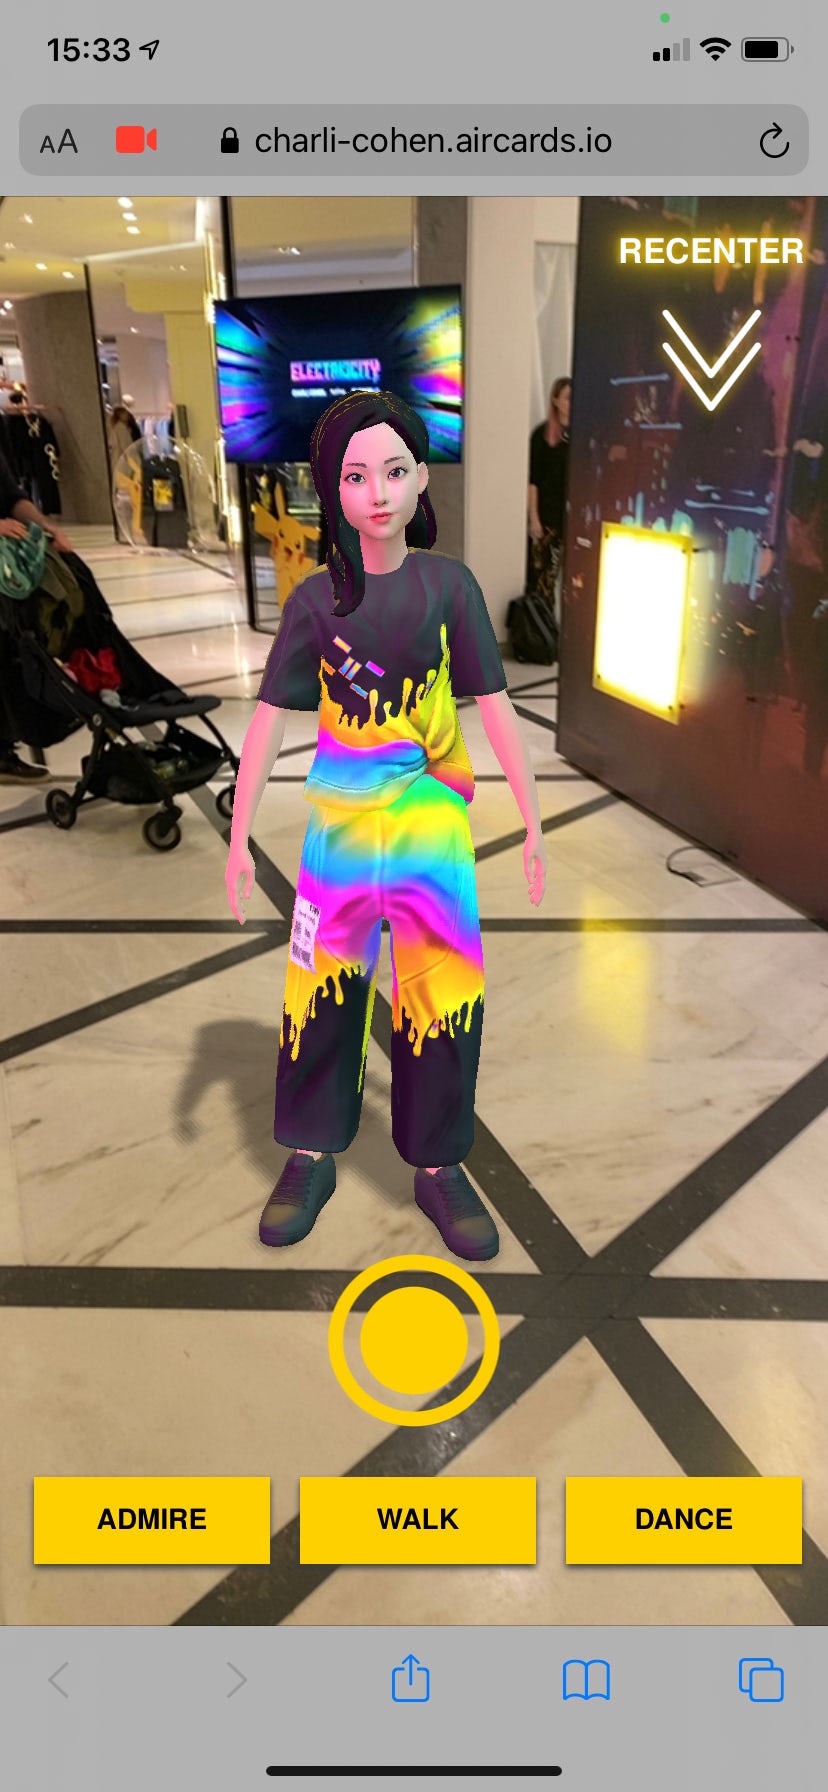 在塞尔福里奇百货商店的地板上，一个穿着数码查利·科恩服装的虚拟形象。转炉。